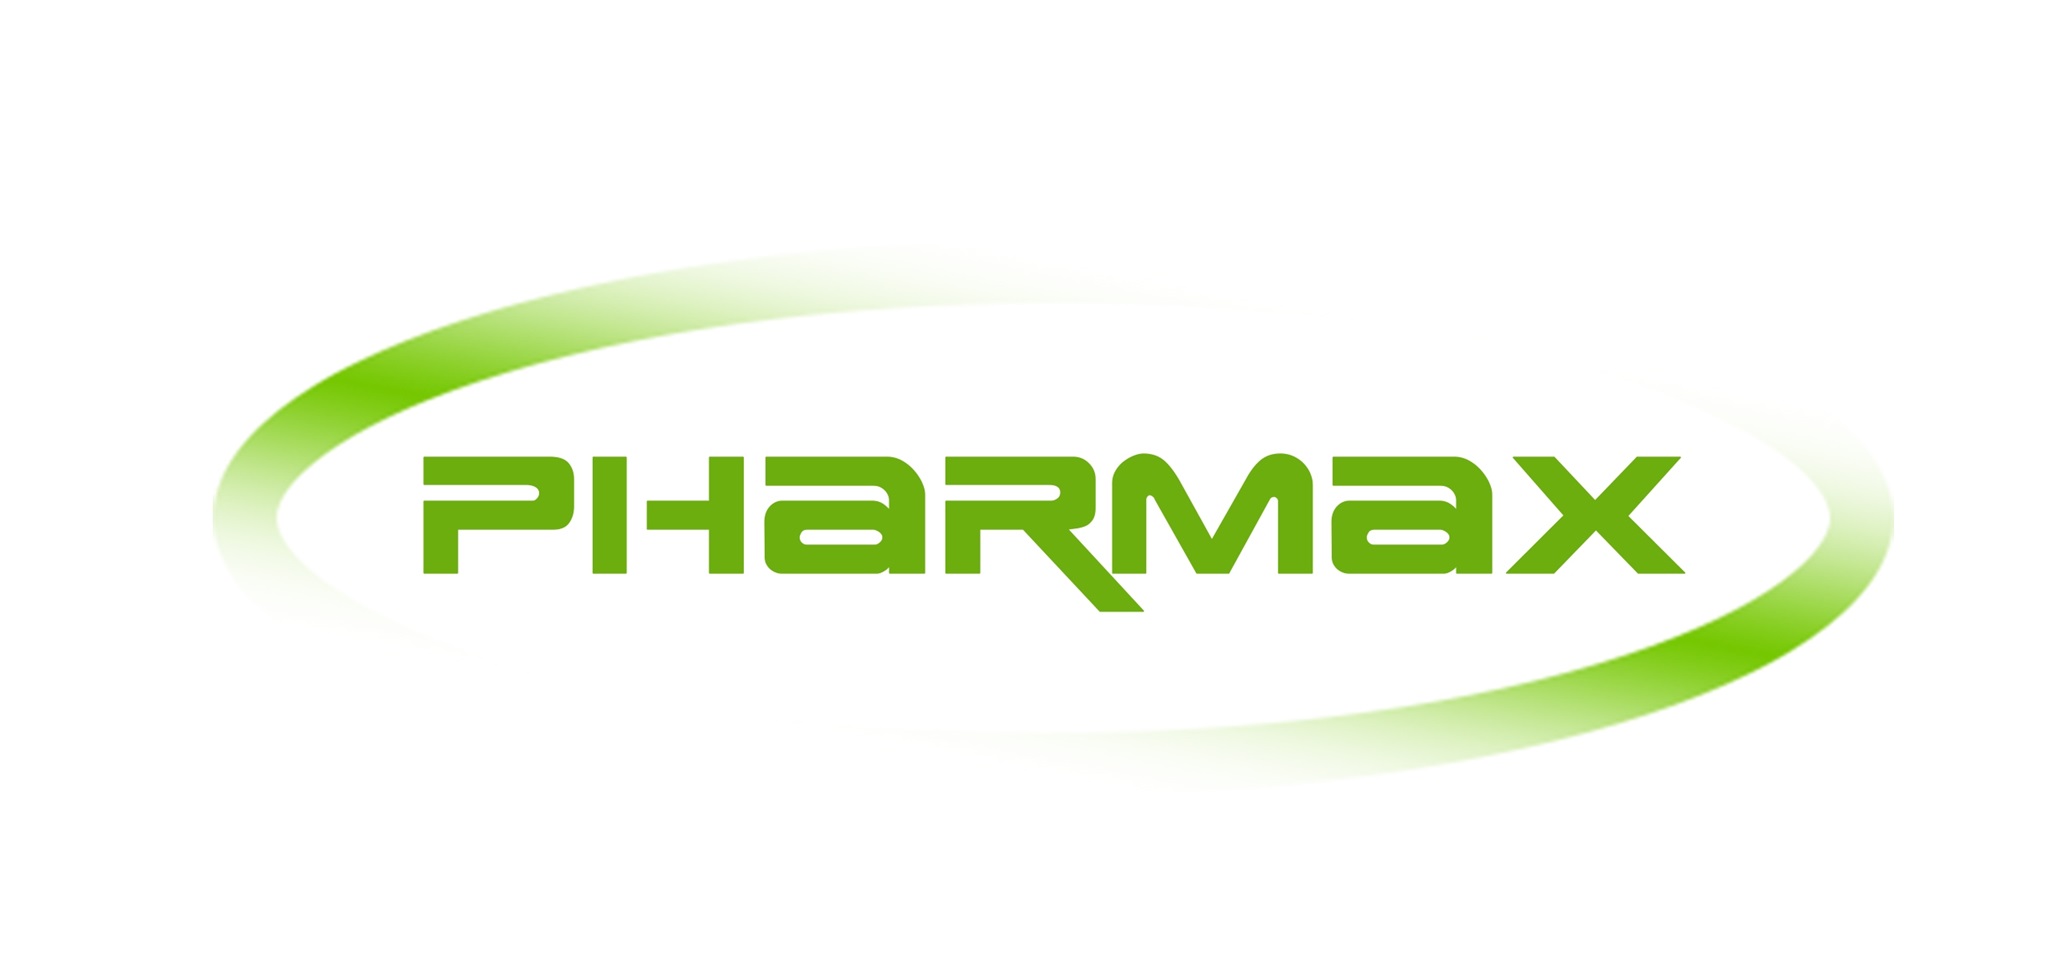 Pharmax NA Inc